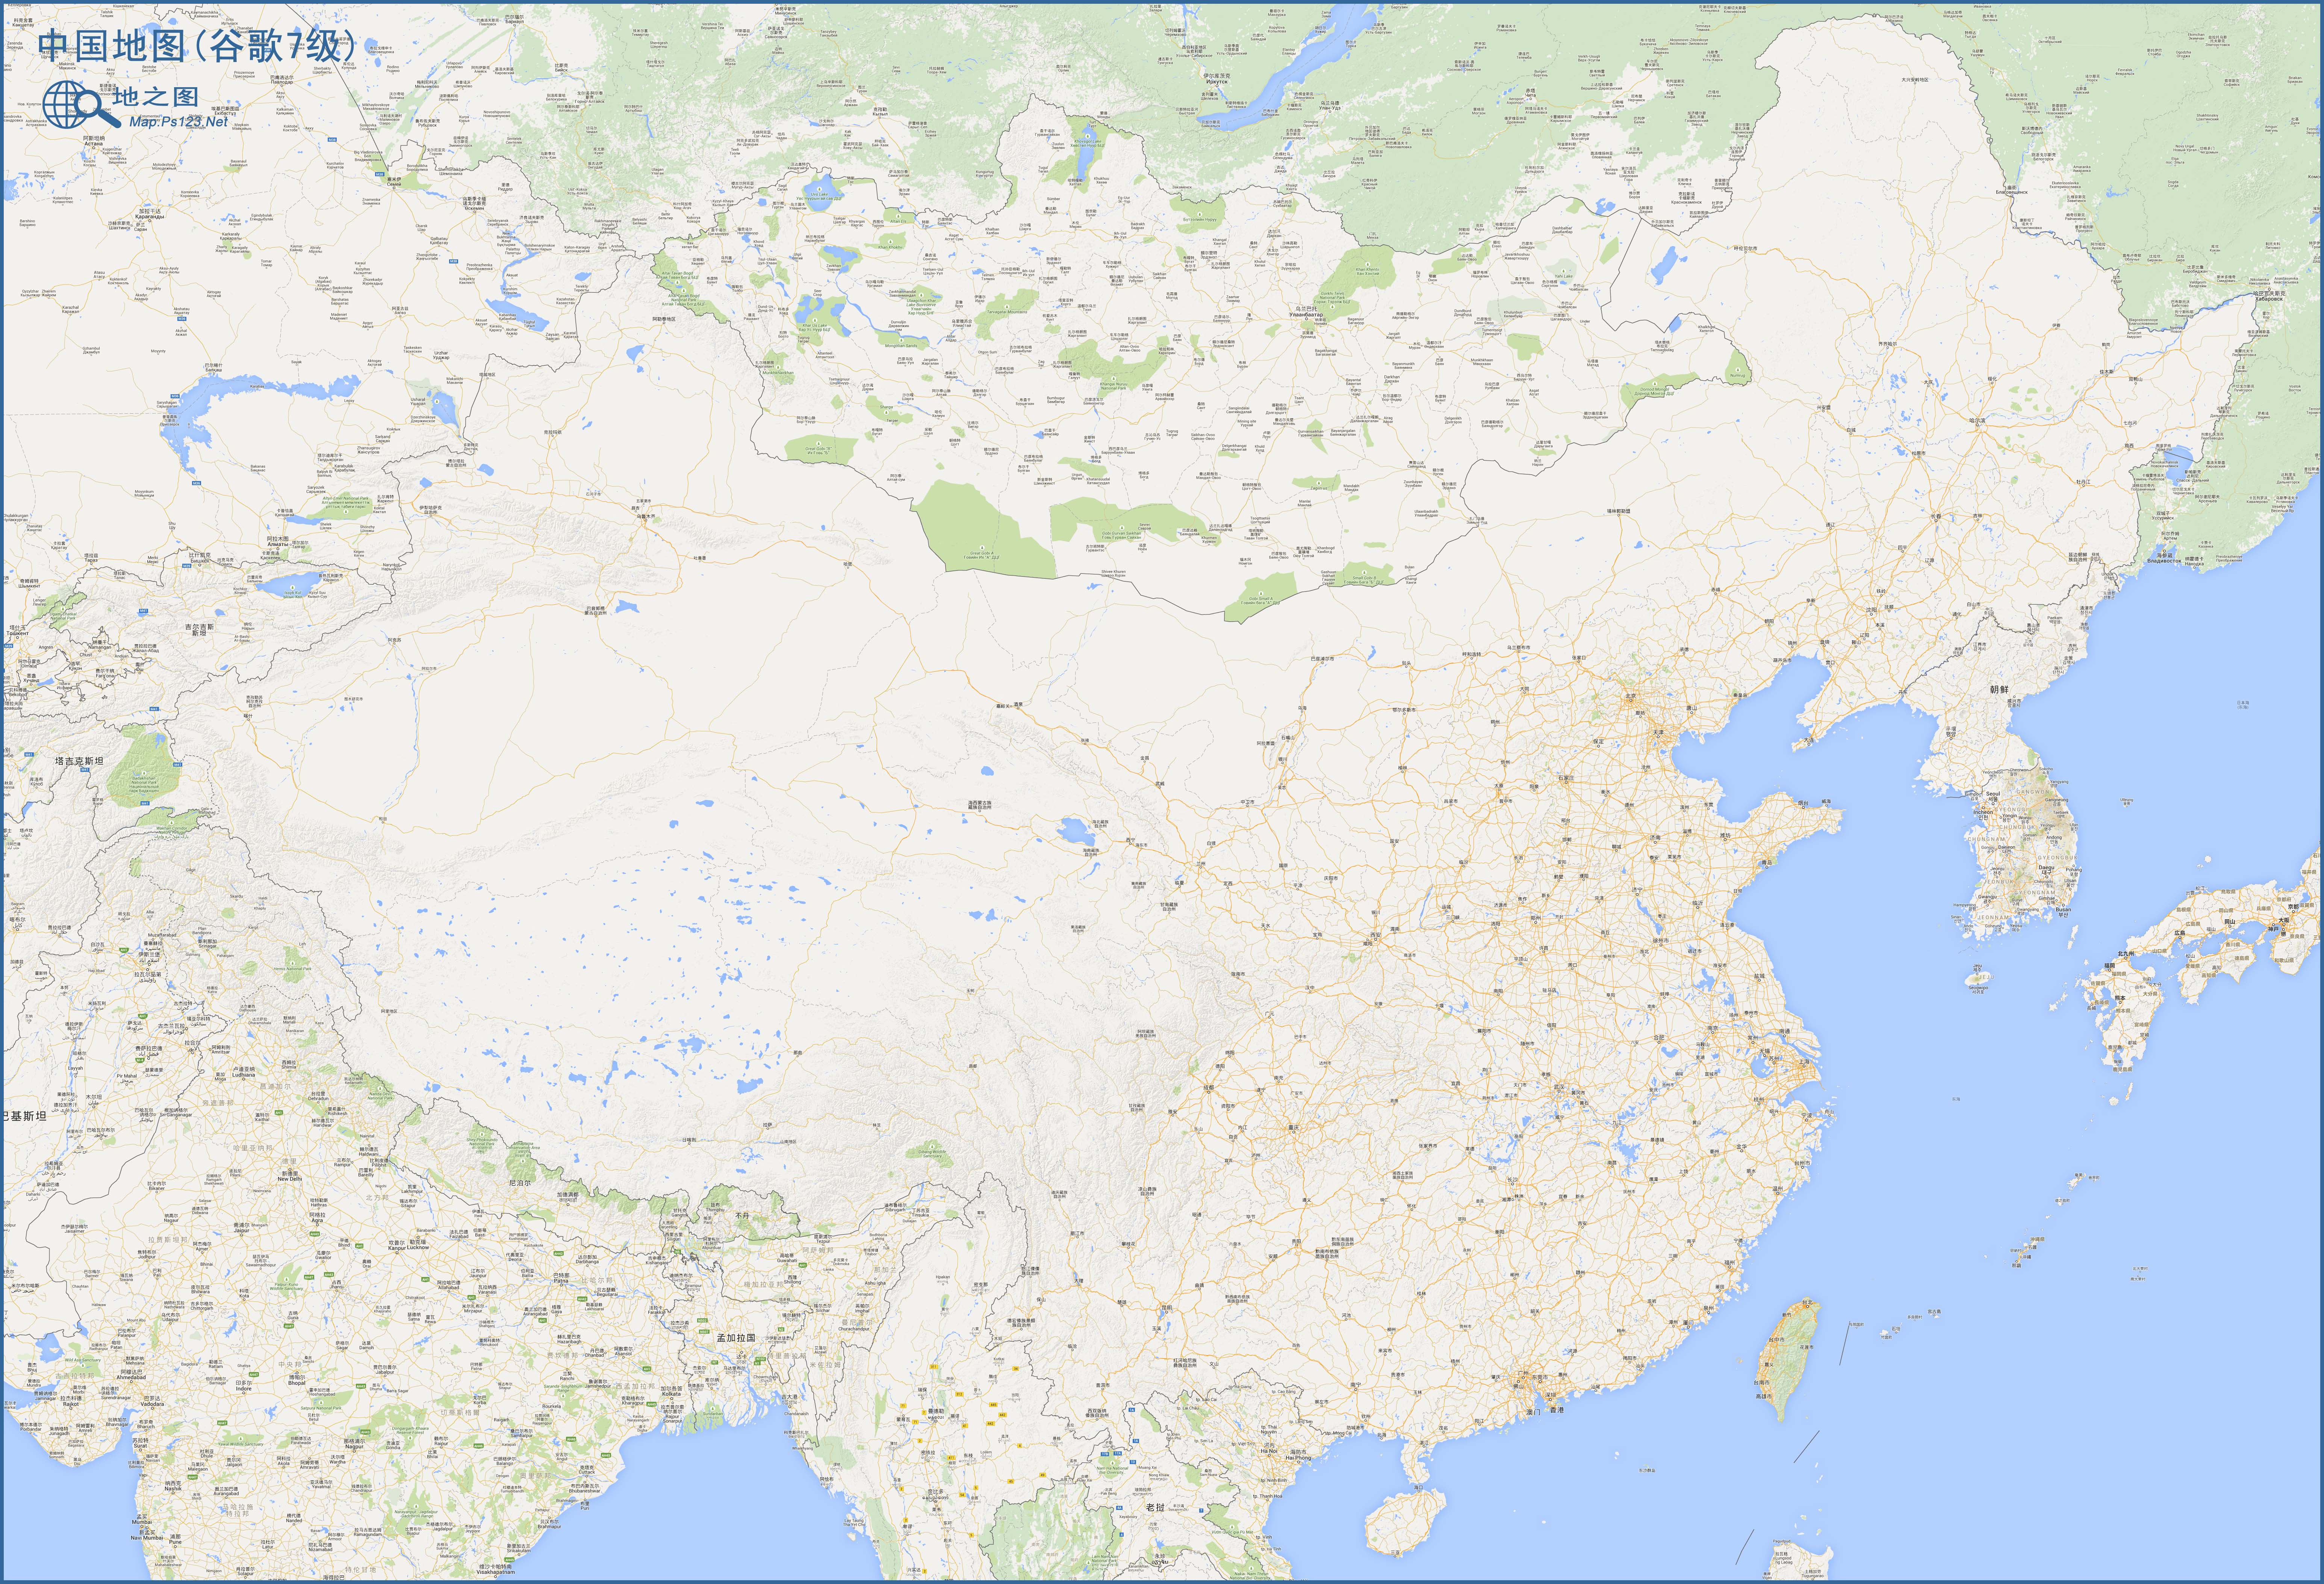 陕西  甘肃  宁夏  新疆  青海  西藏  香港  澳门  台湾 上一幅地图片